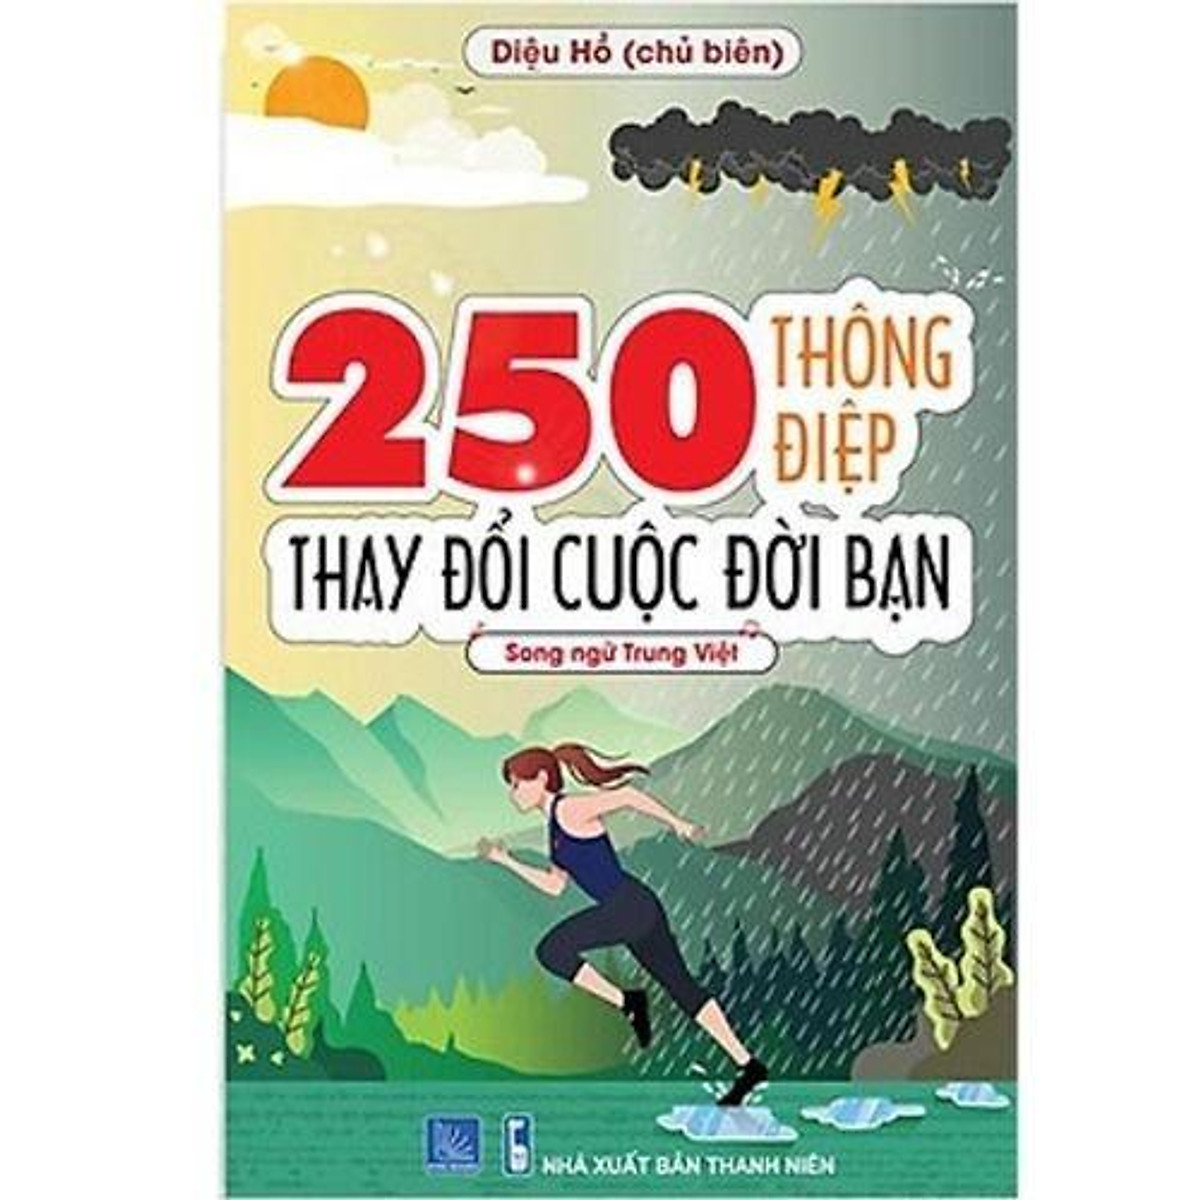 Sách - Combo: 5000 từ vựng tiếng Trung thông dụng nhất + 250 Thông Điệp Thay Đổi Cuộc Đời Bạn (Song Ngữ Trung Việt)